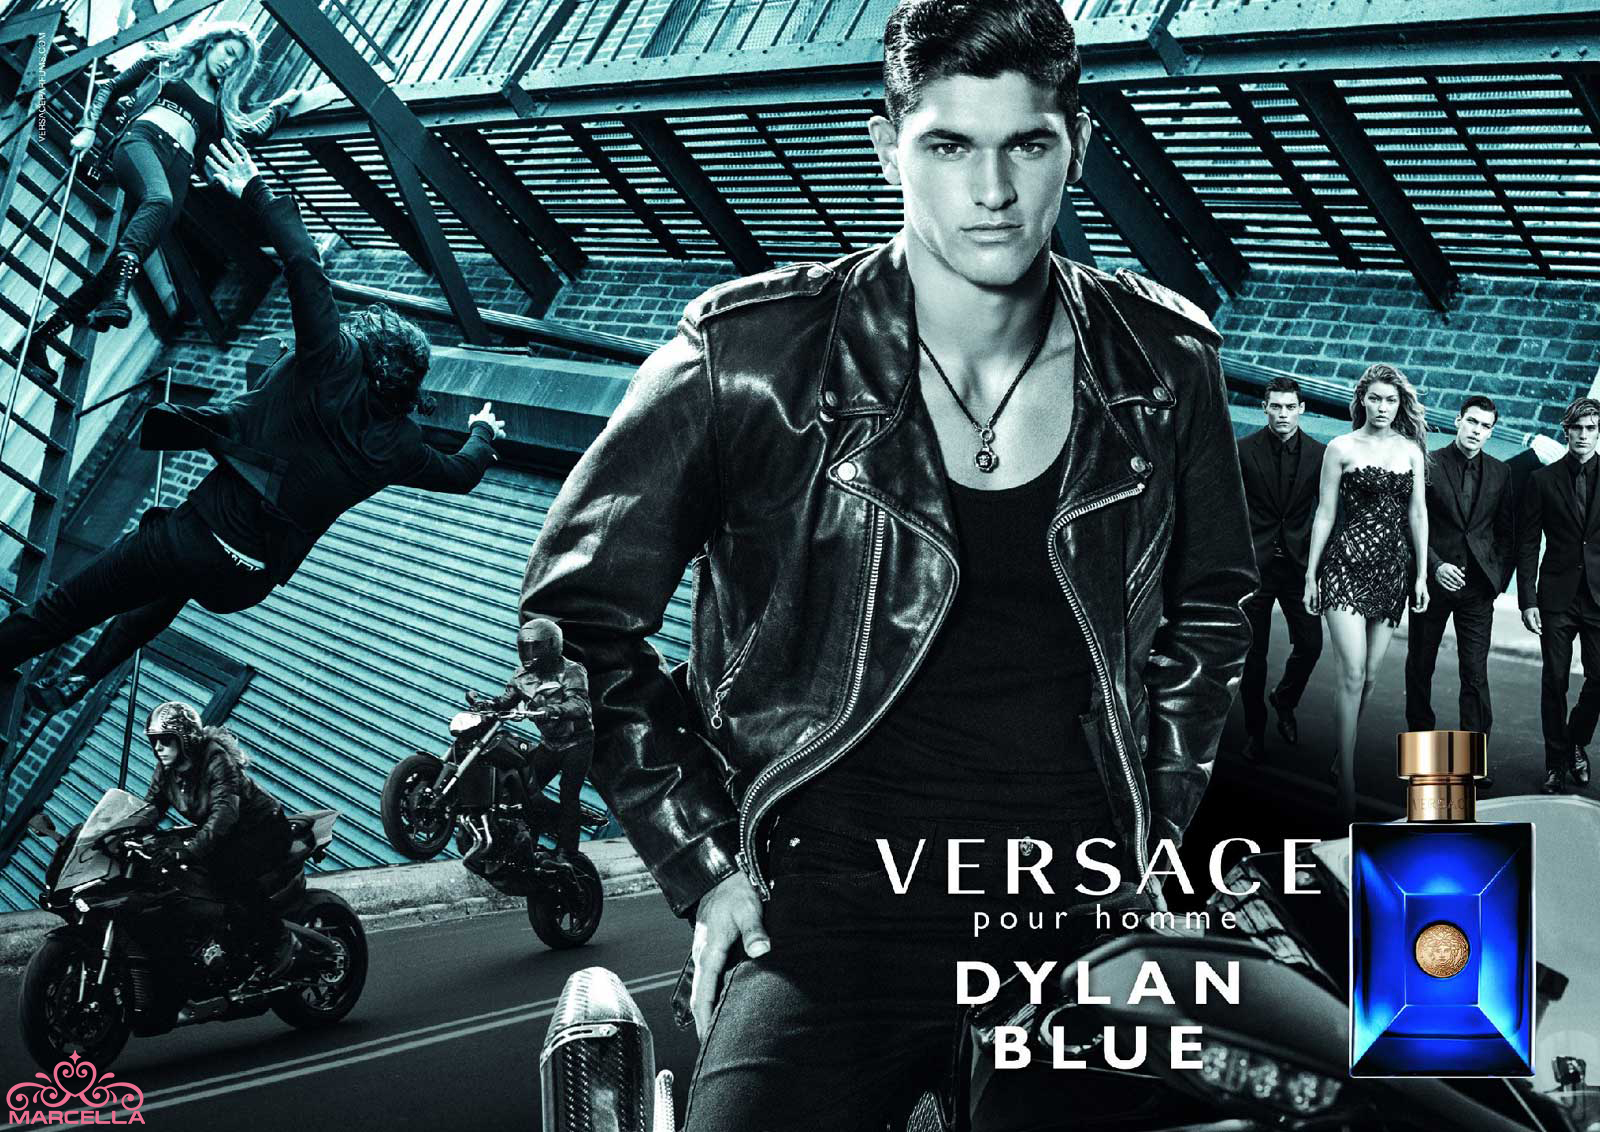 خرید عطر (ادکلن) ورساچه پورهوم دیلن بلو (ورساچه دیلان آبی) مردانه Versace Pour Homme Dylan Blue اصل